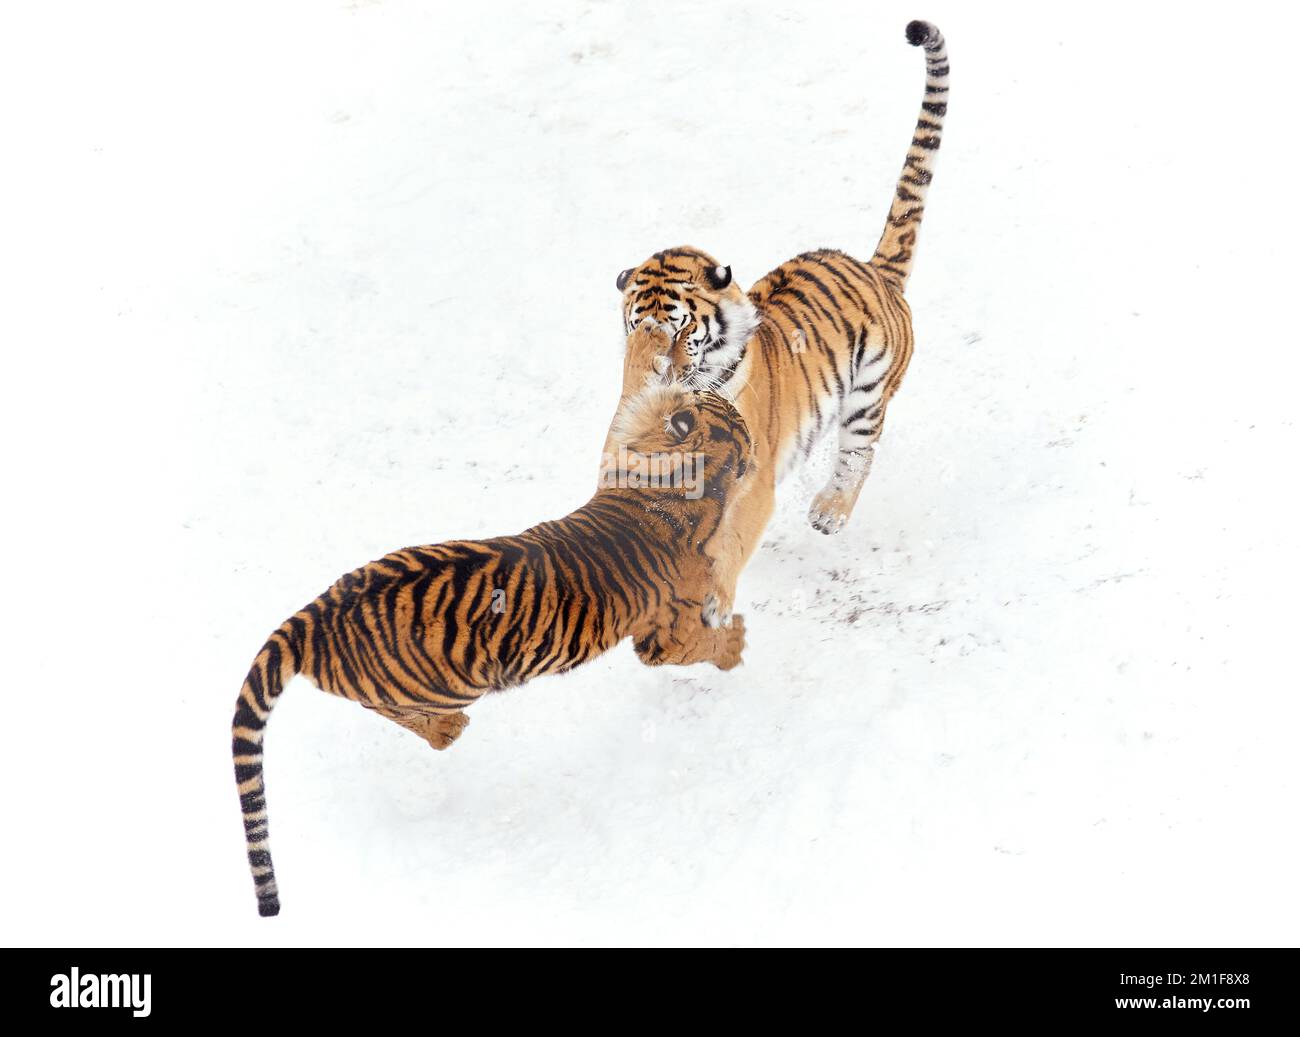 Combat dans la neige. Sumatran et Amur Tigers jouent pendant un week-end enneigé aux Dudley Zoological Gardens, Angleterre.Dudley Zoo, Royaume-Uni: IMAGES LUDIQUES s Banque D'Images